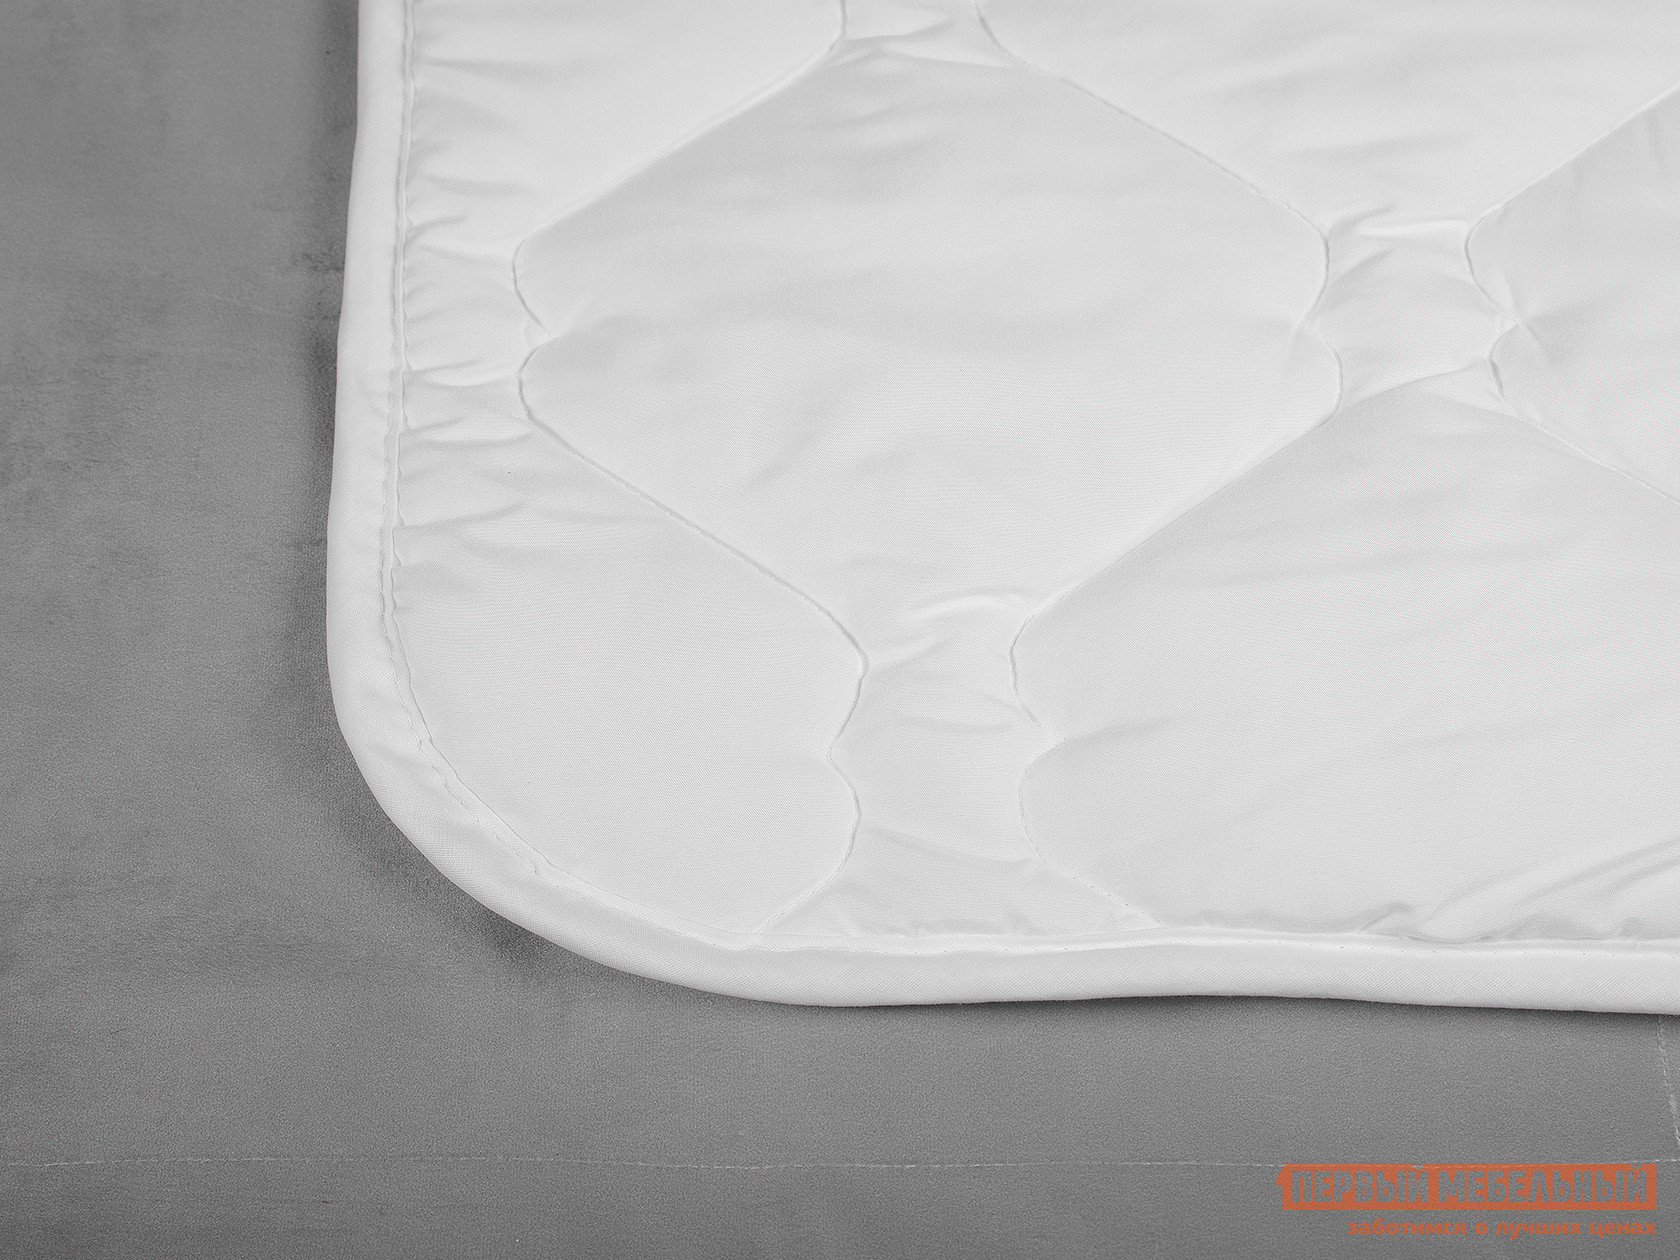 Одеяло  Одеяло "Бамбук" Белый, 1700 х 2050 мм от Первый Мебельный